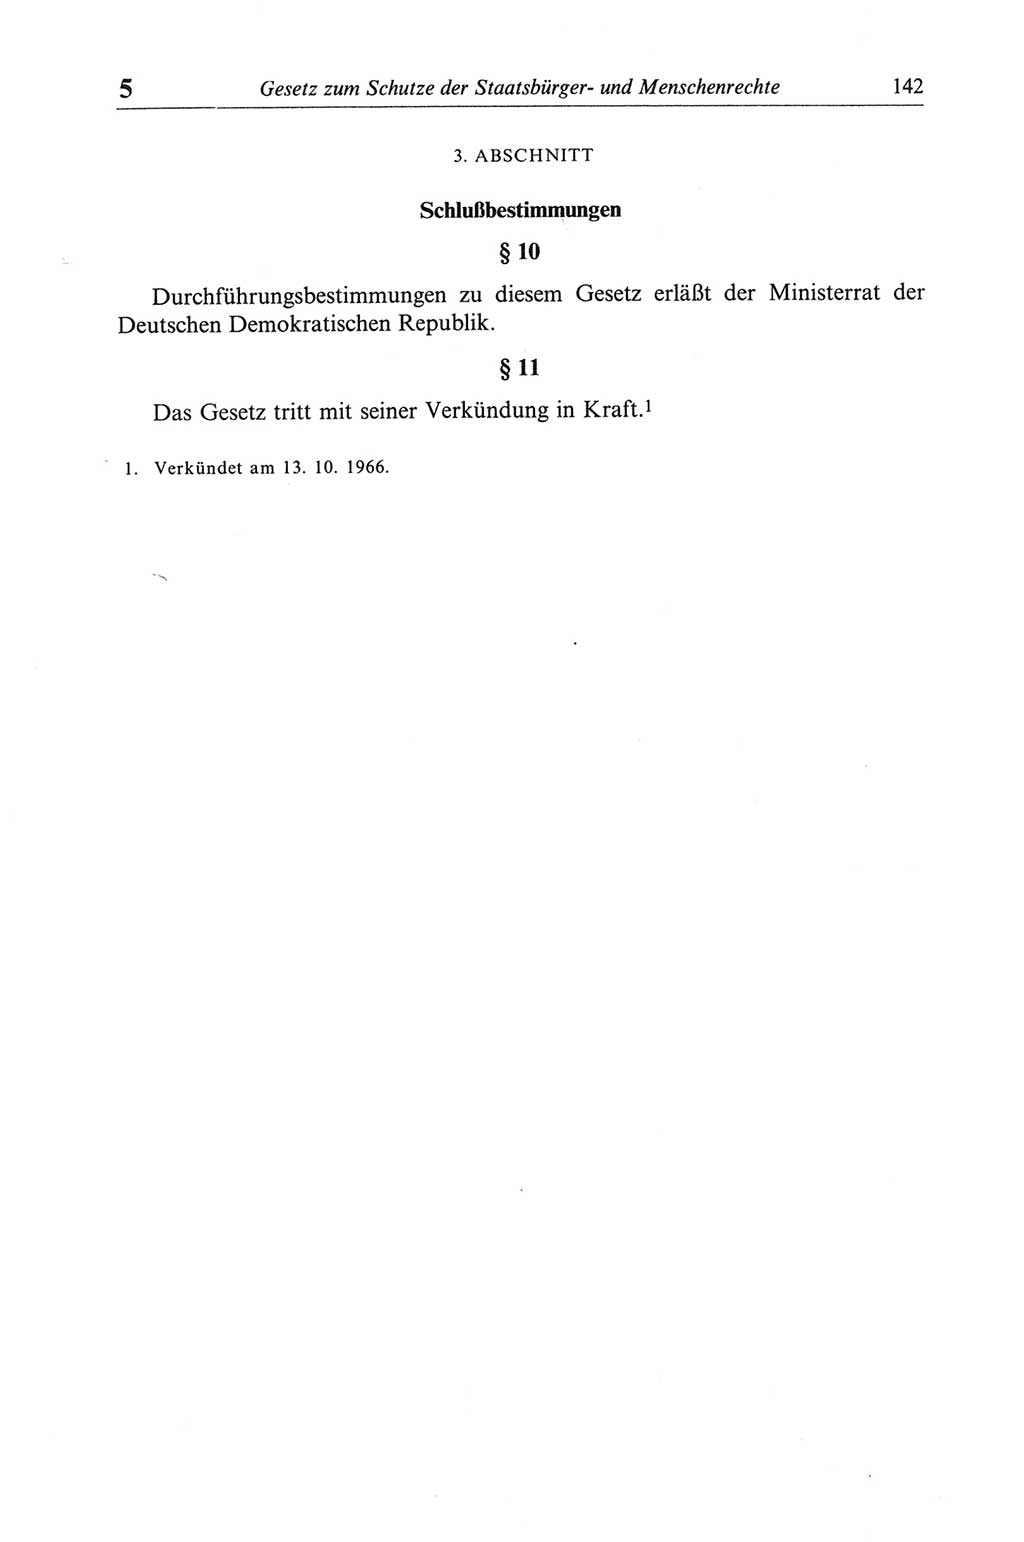 Strafgesetzbuch (StGB) der Deutschen Demokratischen Republik (DDR) und angrenzende Gesetze und Bestimmungen 1968, Seite 142 (StGB Ges. Best. DDR 1968, S. 142)